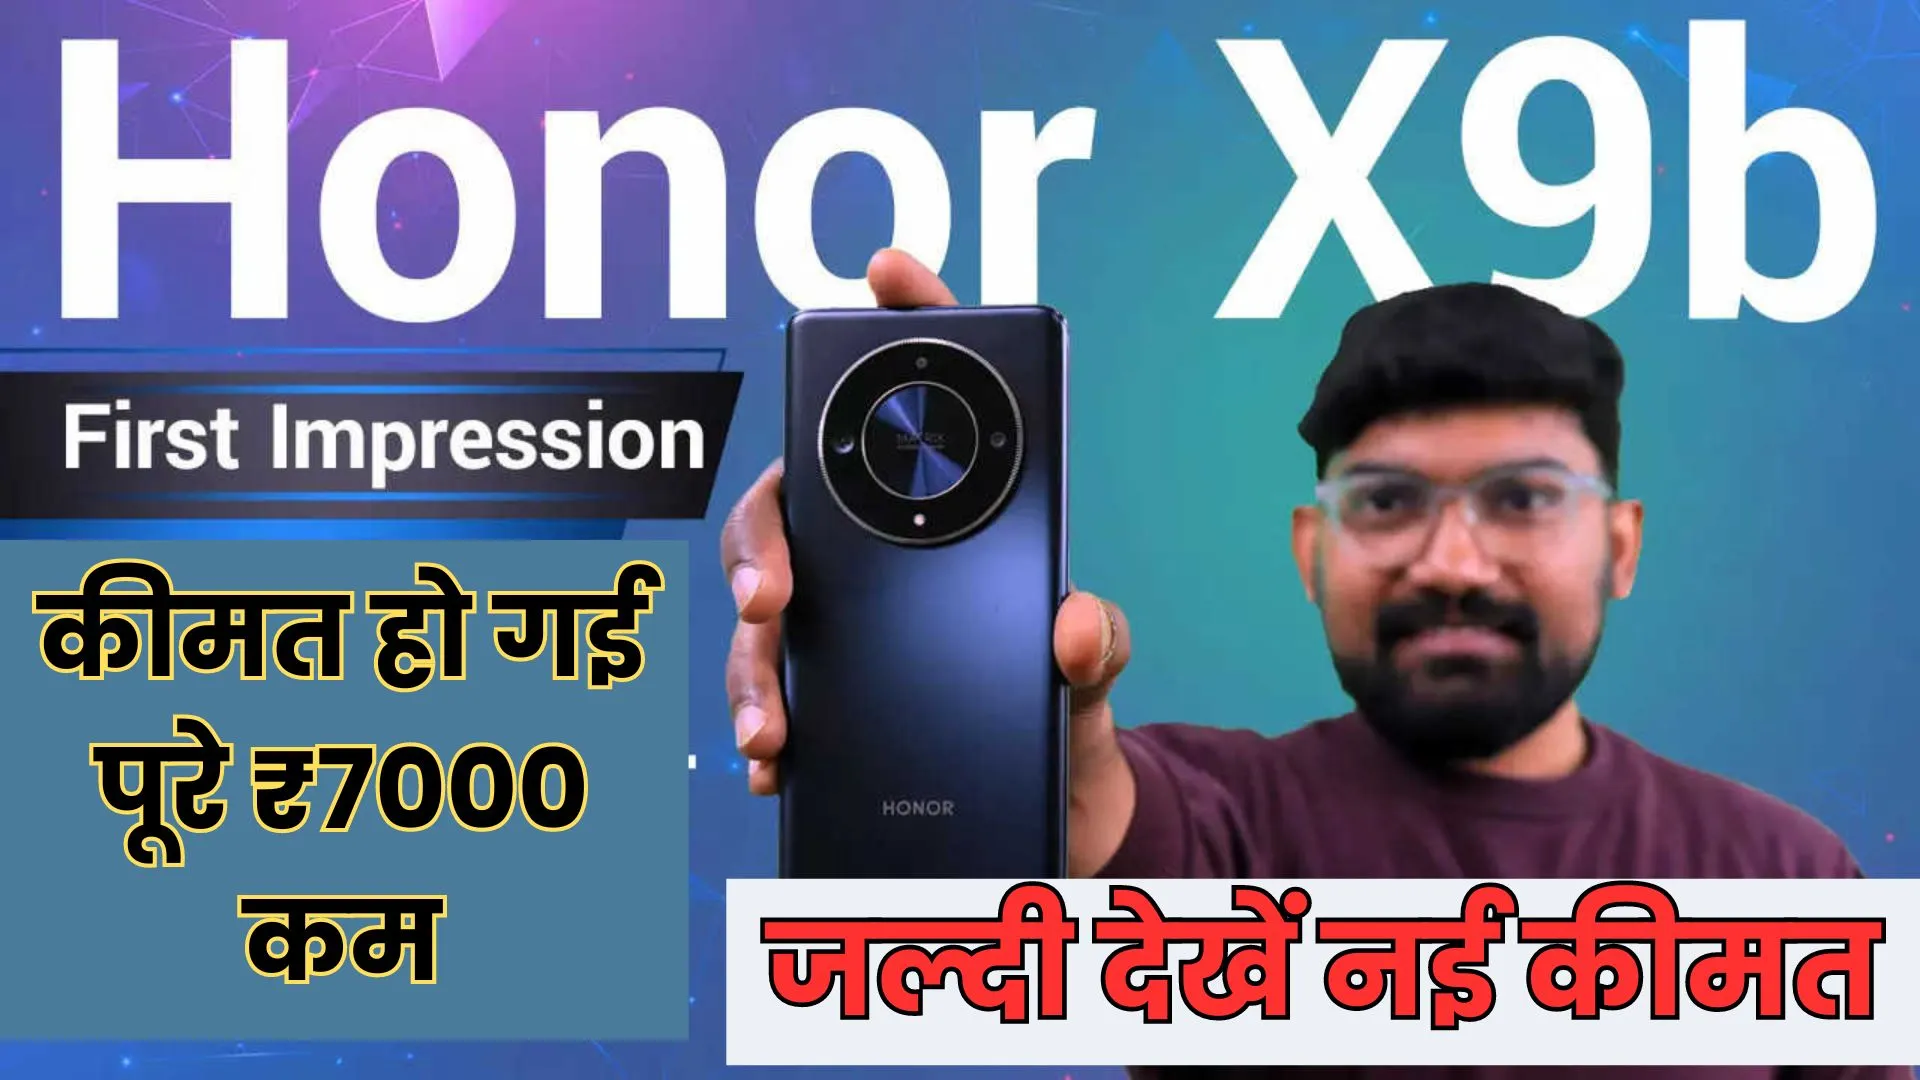 Honor X9b 5G